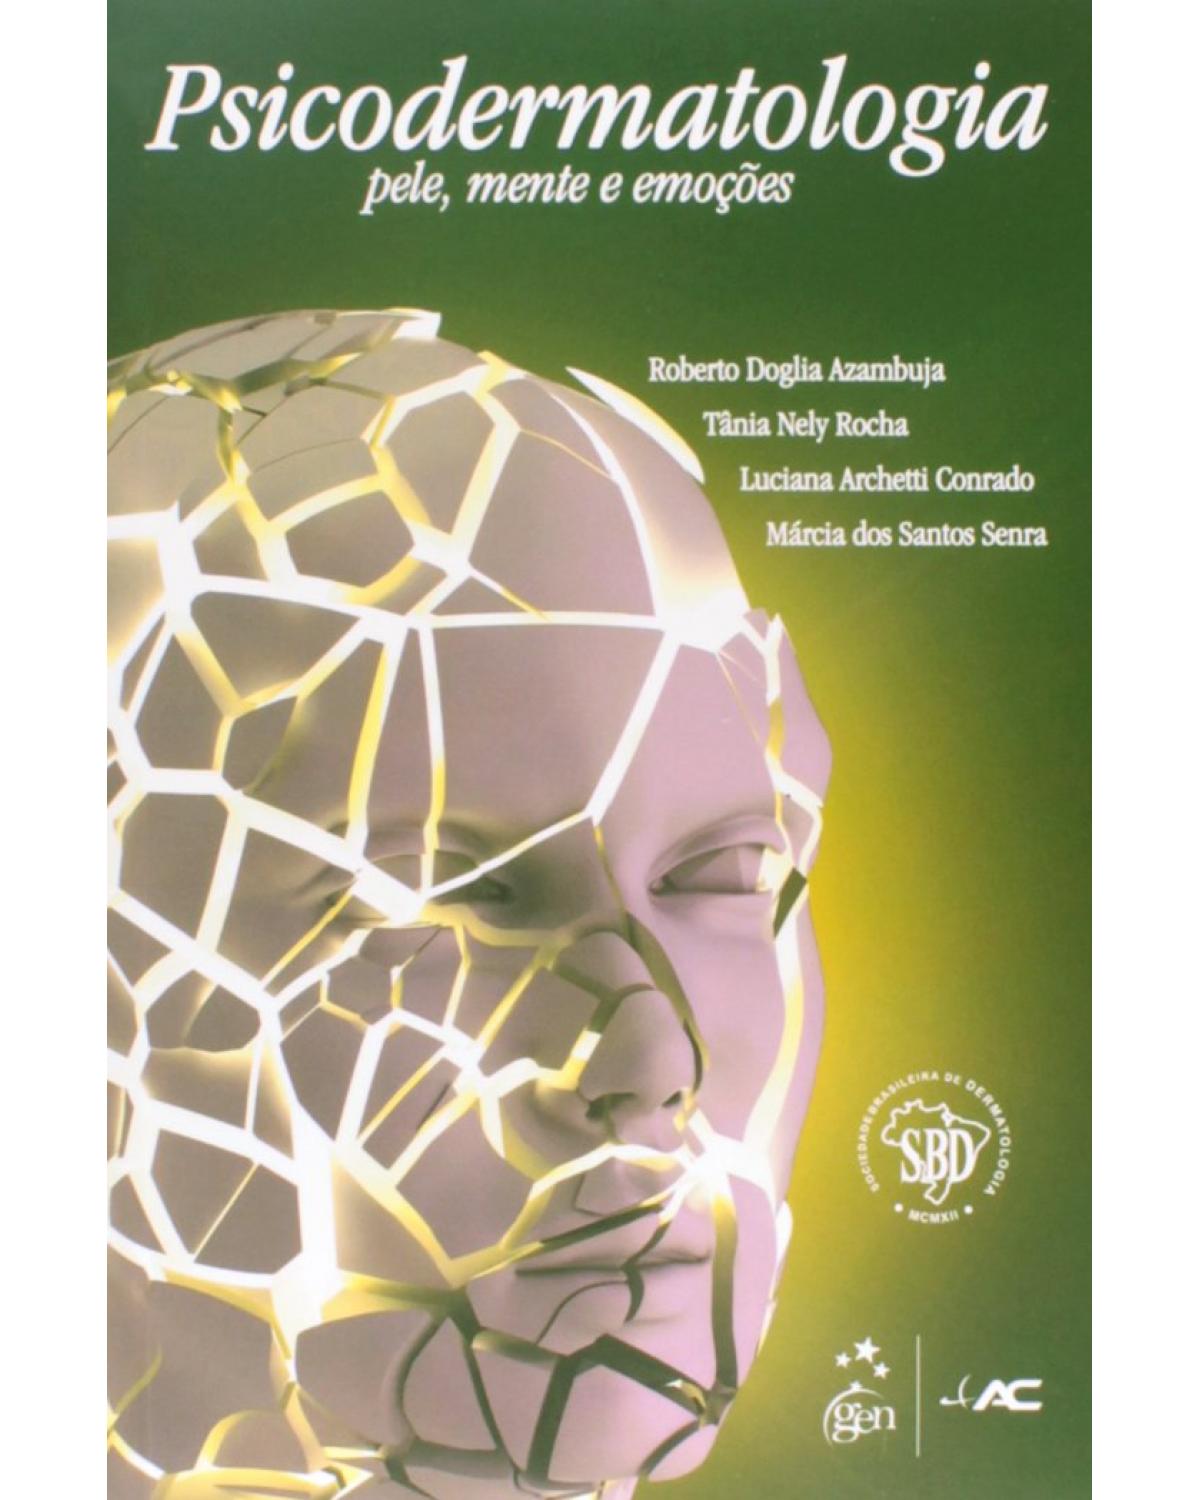 Psicodermatologia - Pele, mente e emoções - 1ª Edição | 2015